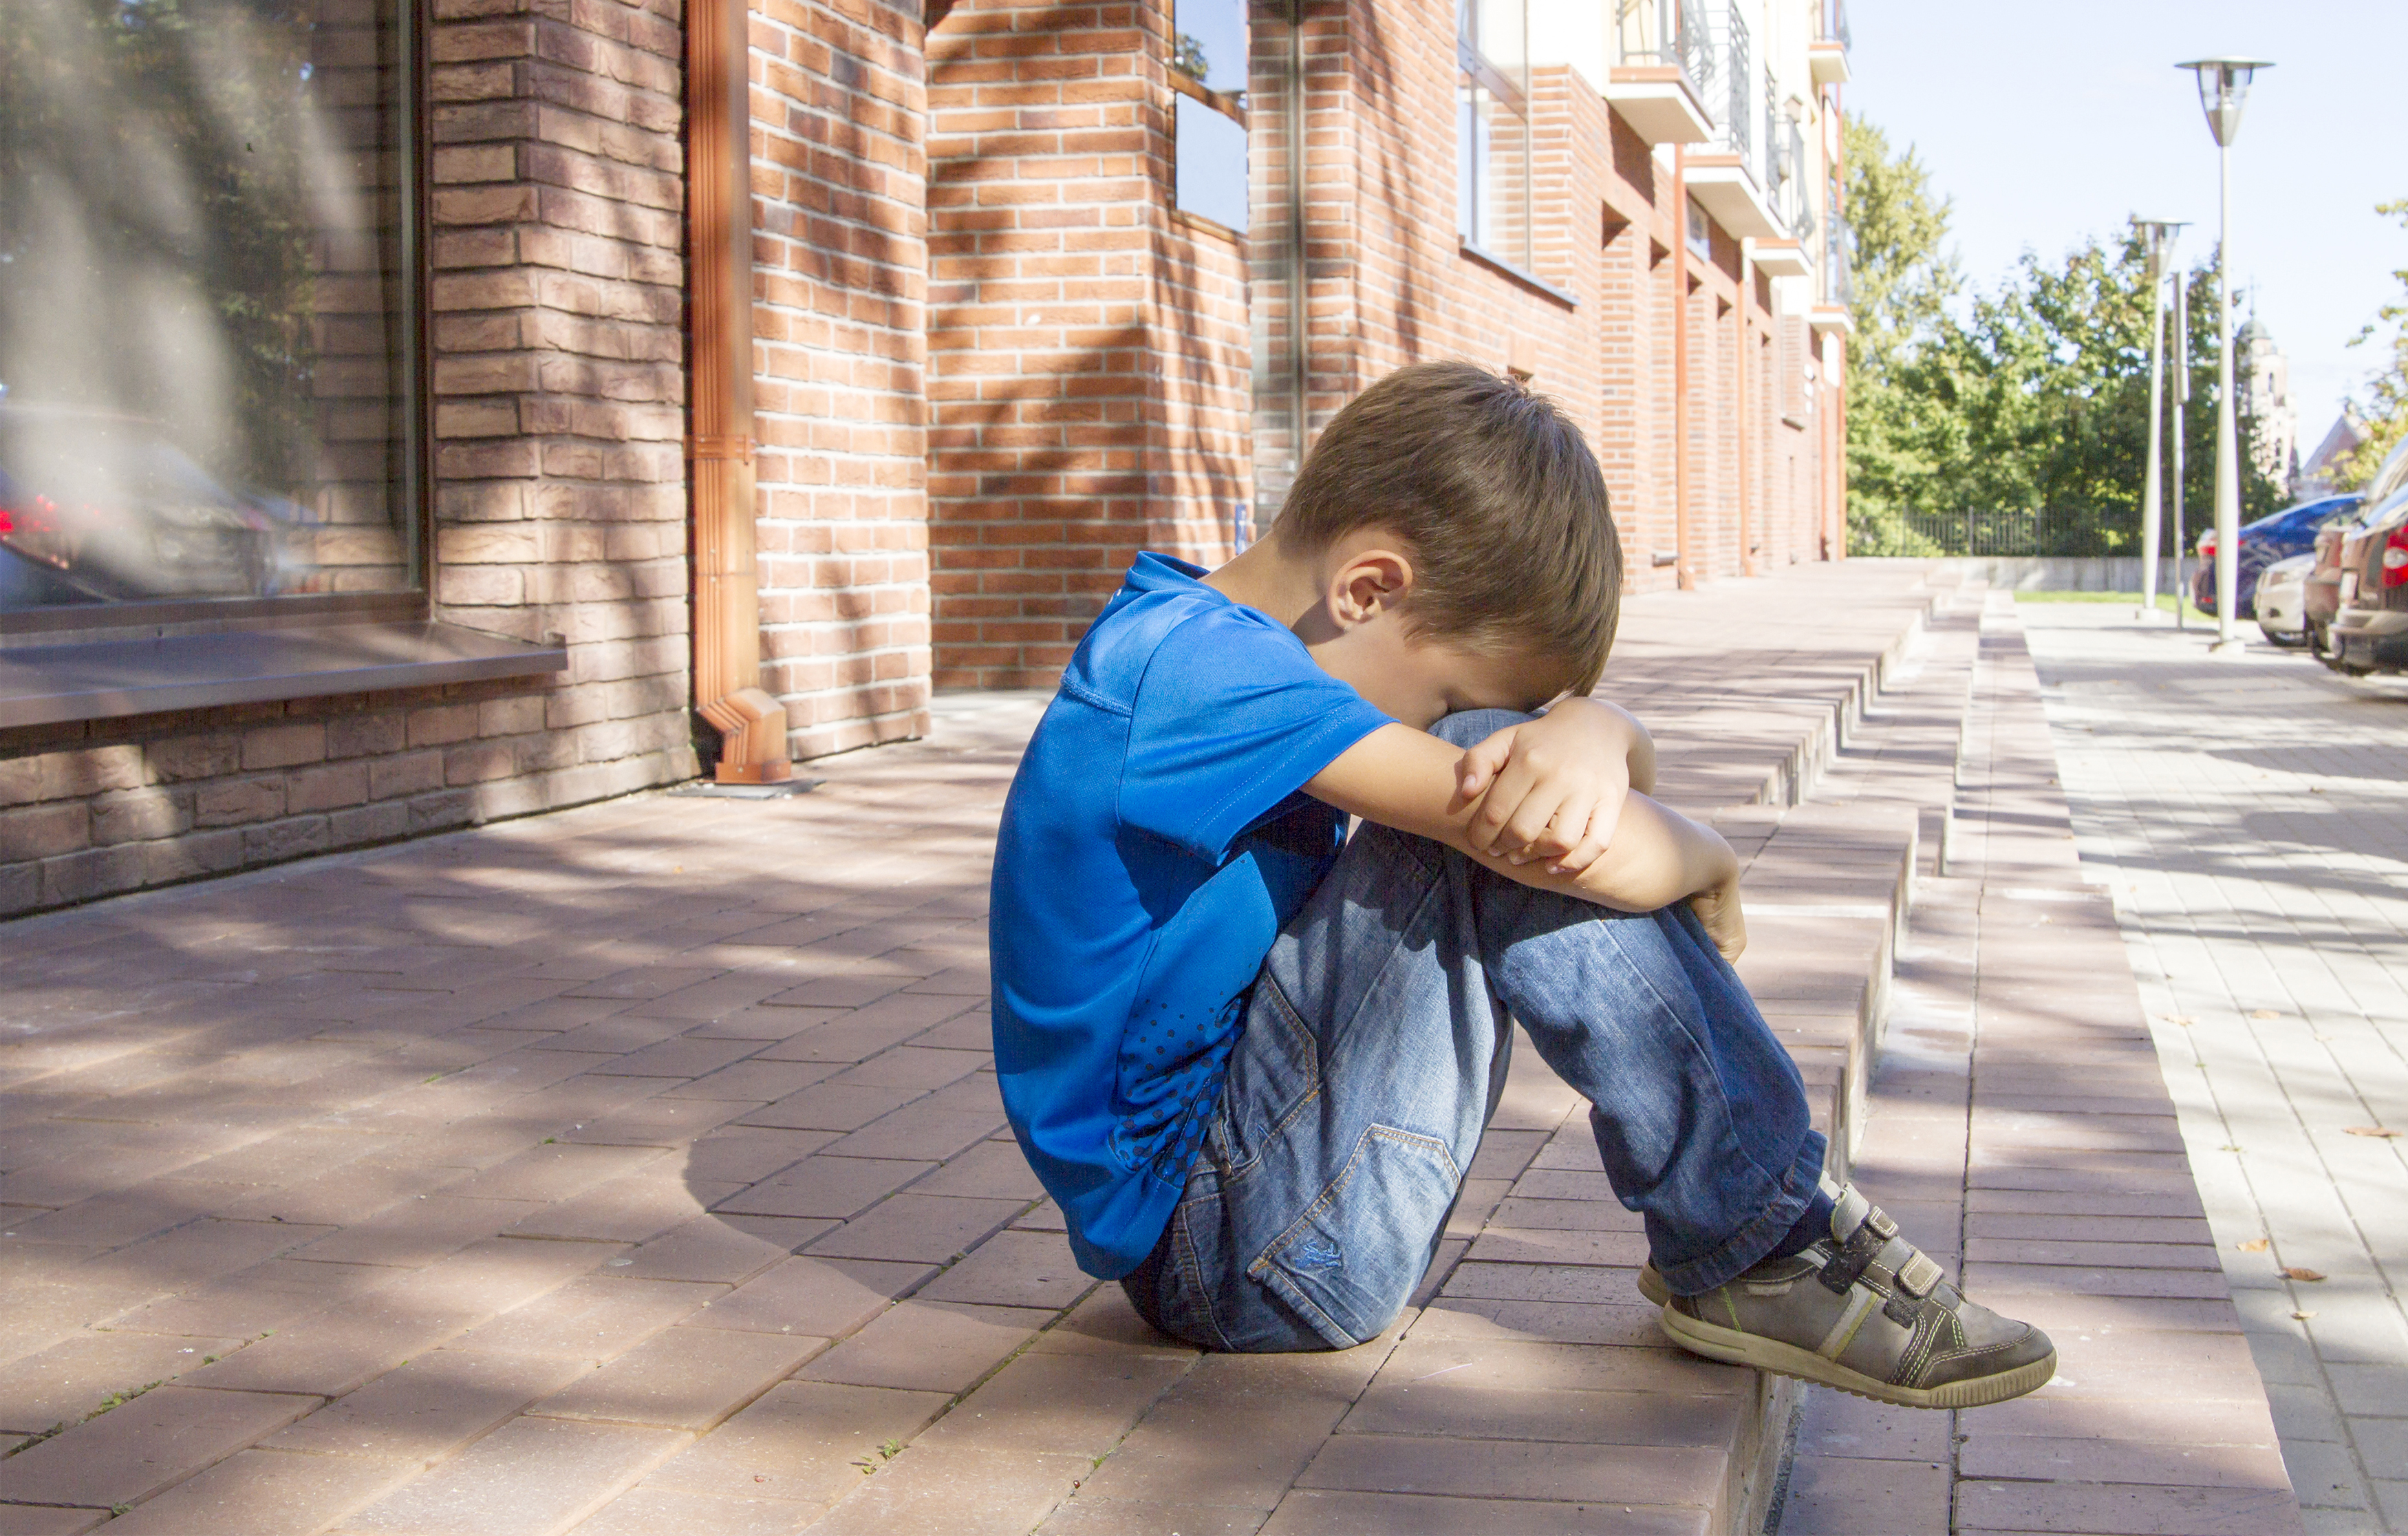 A sad young boy sitting on a sidewalk | Source: Shutterstock